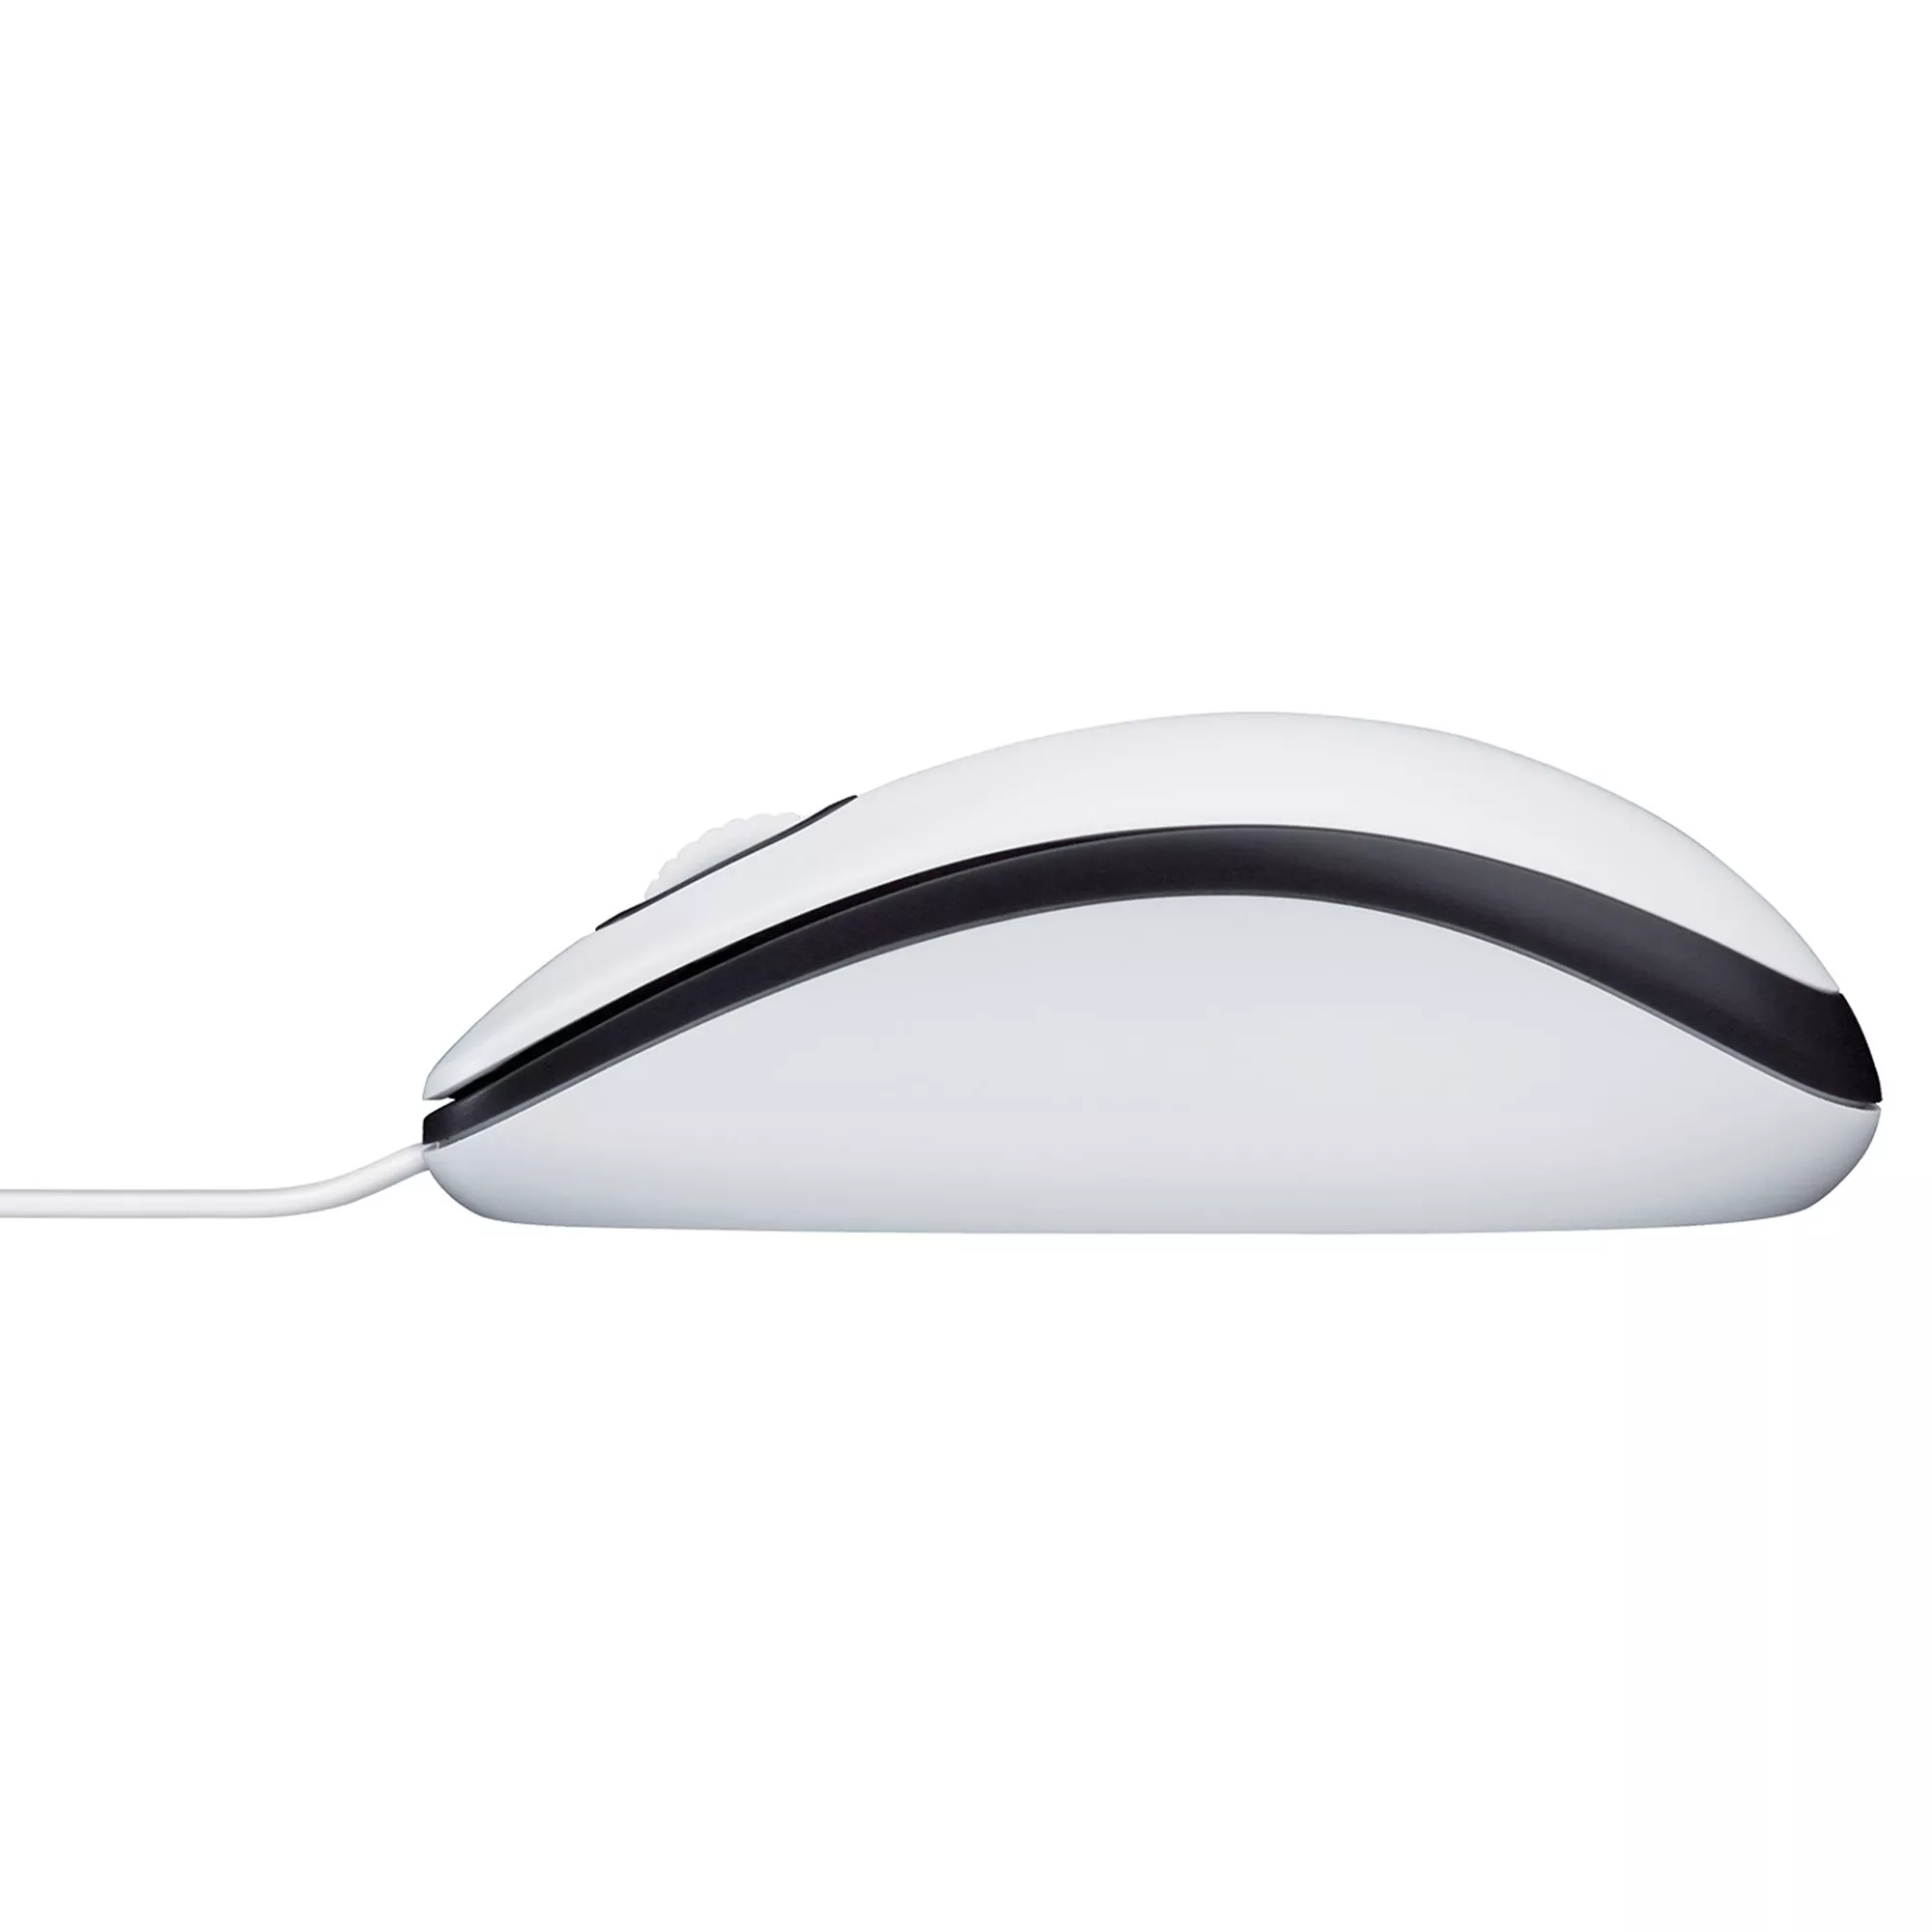 Vente LOGITECH M100 Mouse full size right and left-handed Logitech au meilleur prix - visuel 10